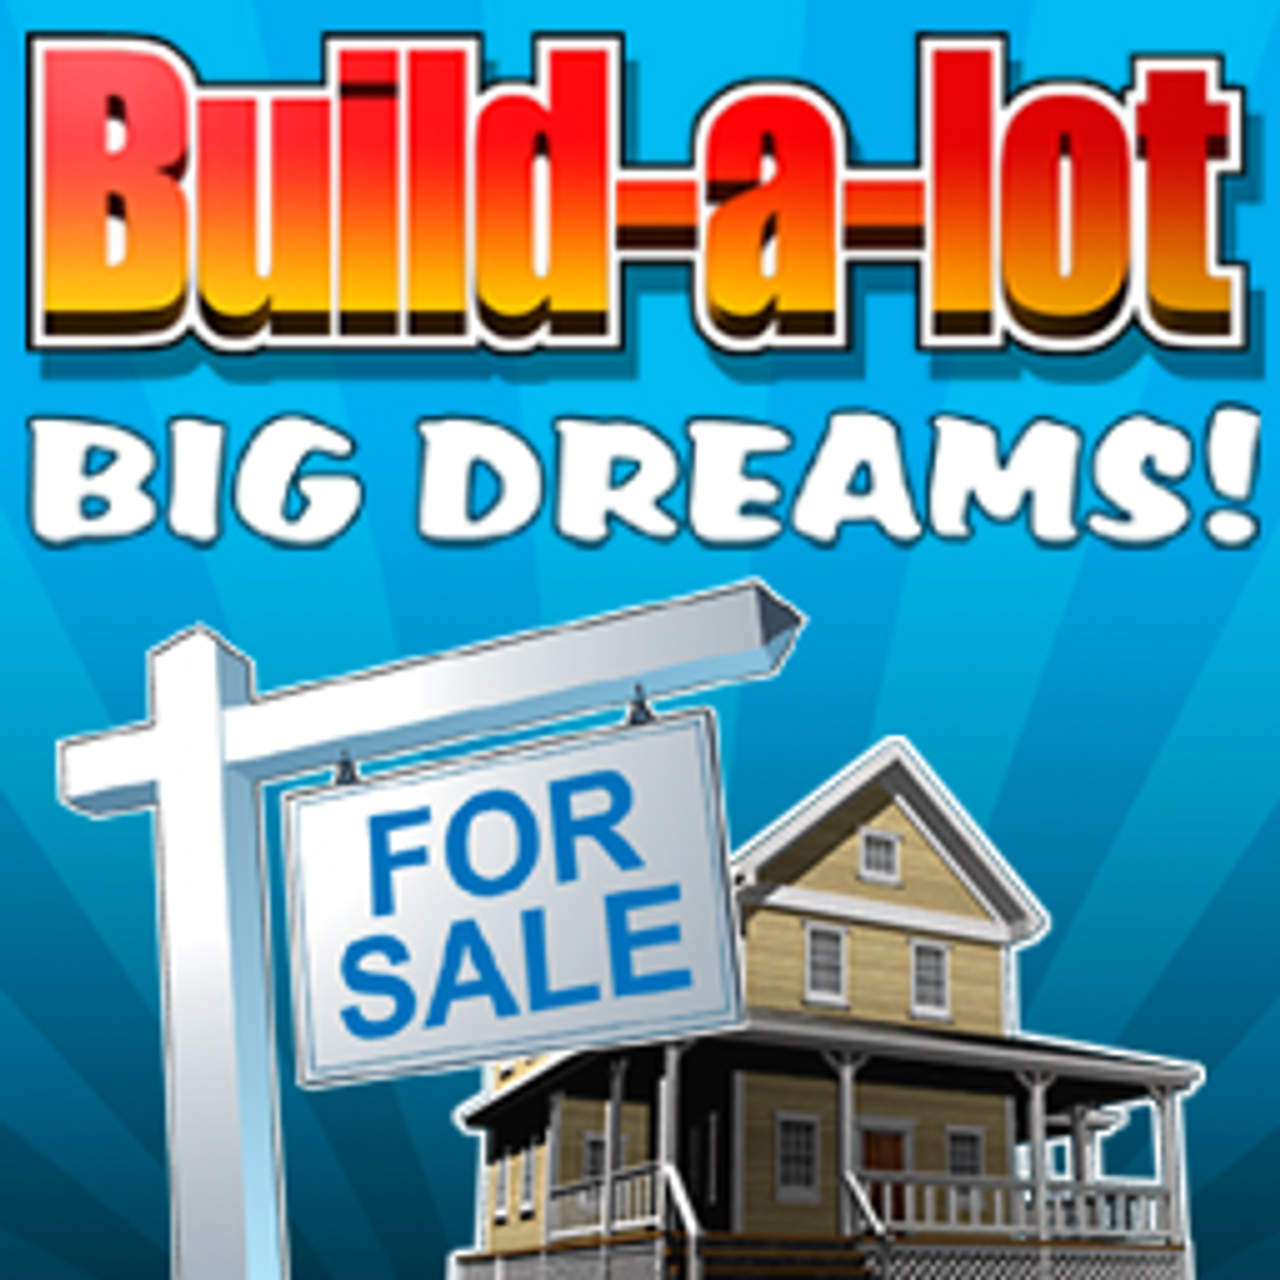 Build-a-lot Big Dreams